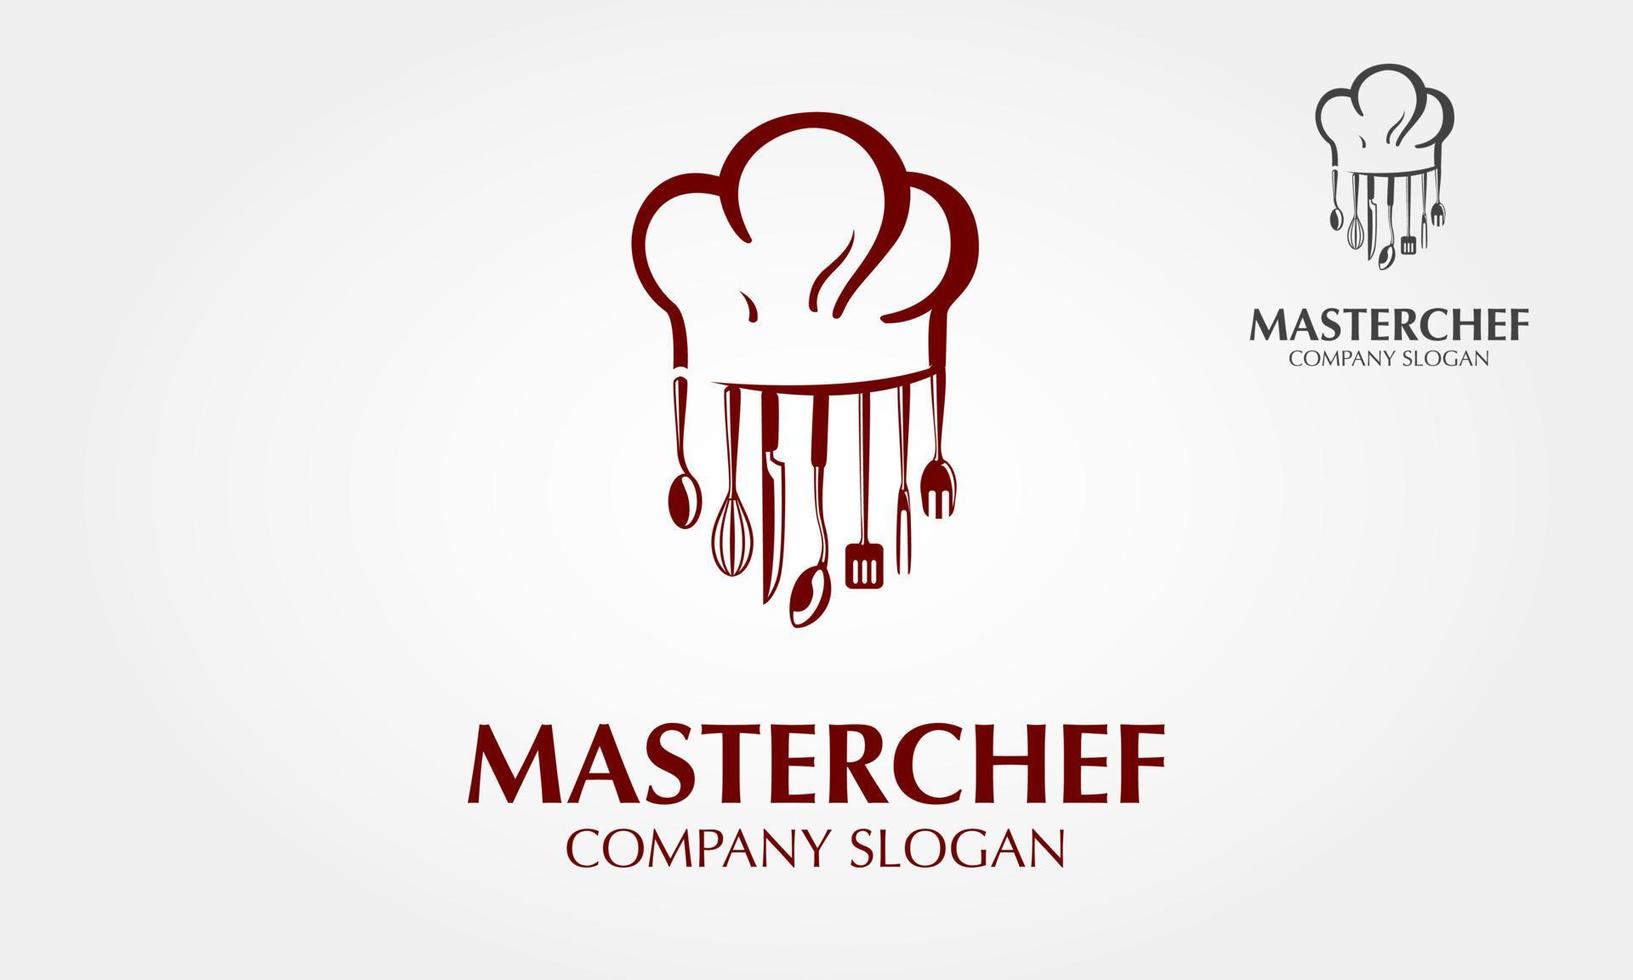 modèle de logo vectoriel de chef cuisinier. utilisez ce logo pour un chef, un restaurant, un traiteur ou tout autre service lié à l'alimentation. illustration de logo vectoriel. style épuré et moderne sur fond blanc.